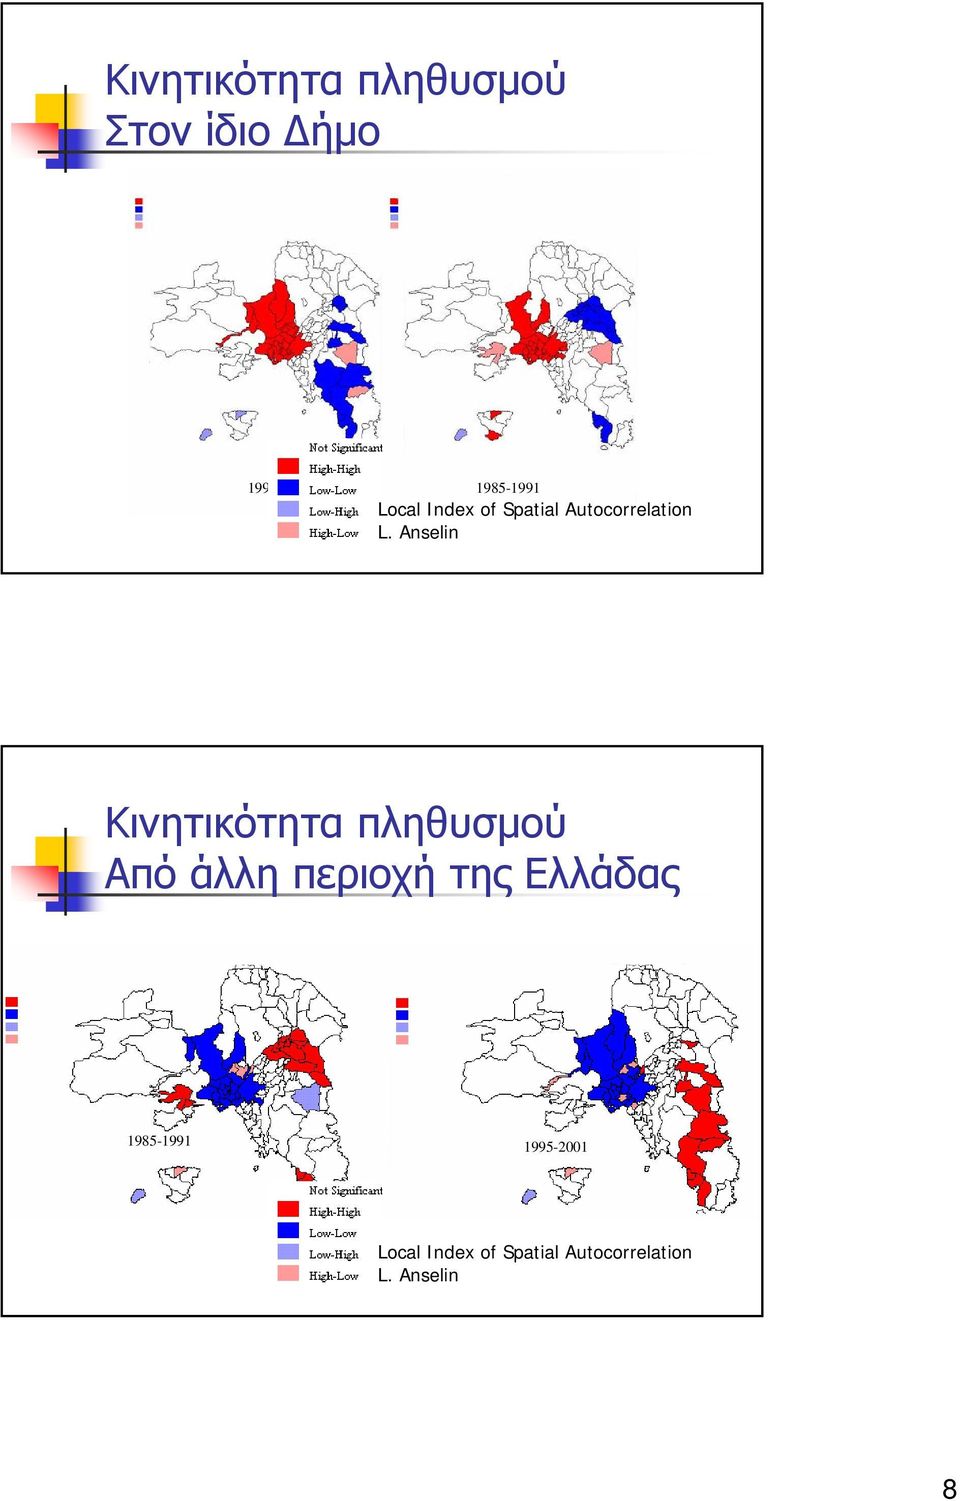 Κινητικότητα πληθυσμού Από άλλη περιοχή της Ελλάδας